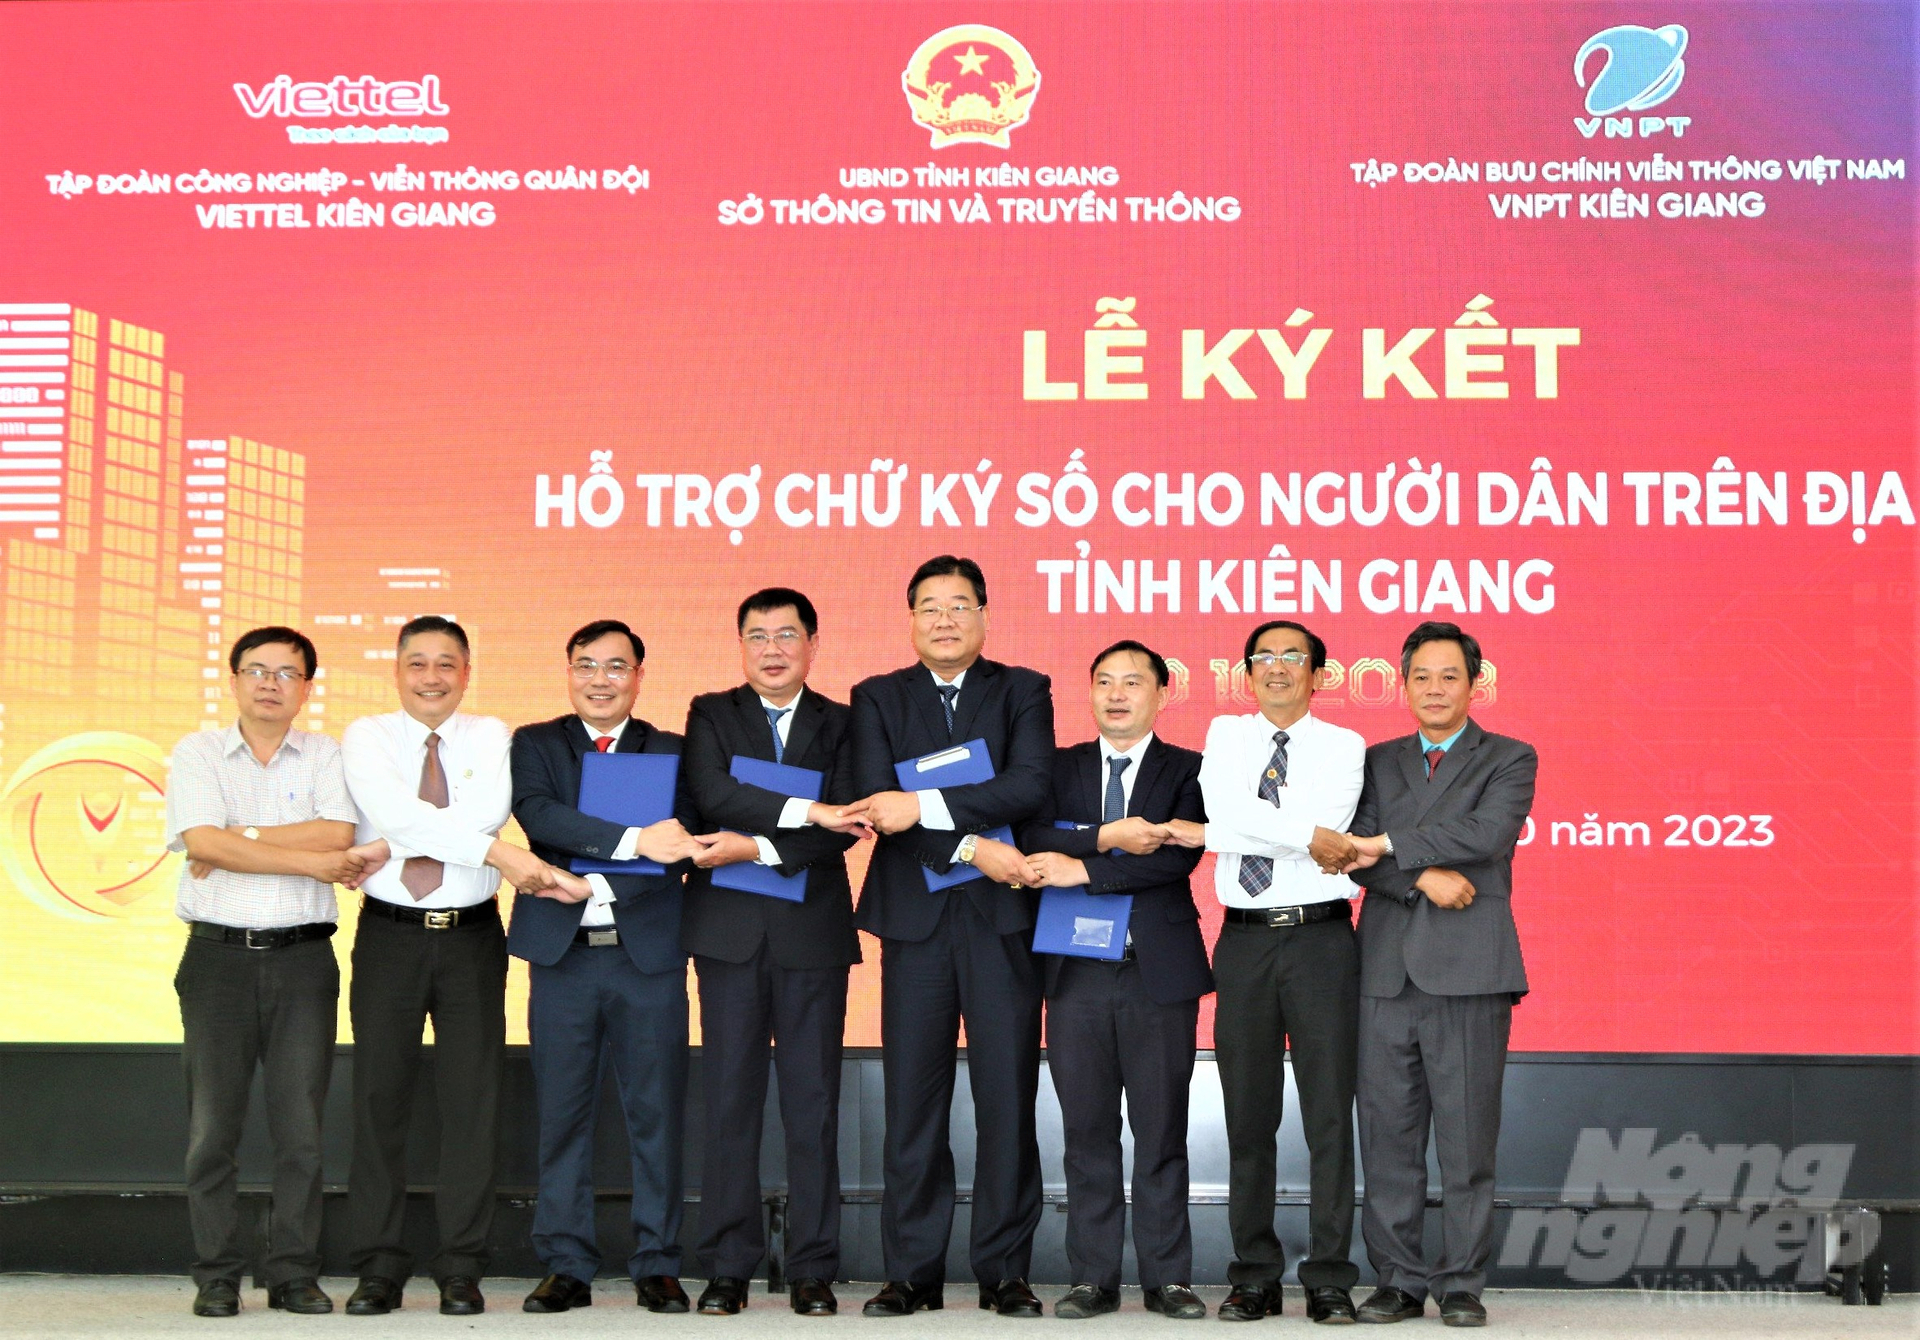 Các đơn vị tham gia Hội nghị Ngày Chuyển đổi số tỉnh Kiên Giang năm 2023 đã ký kết chương trình hợp tác và cùng bắt tay nhau quyết tâm thực hiện thành công chuyển đổi số. Ảnh: Trung Chánh.